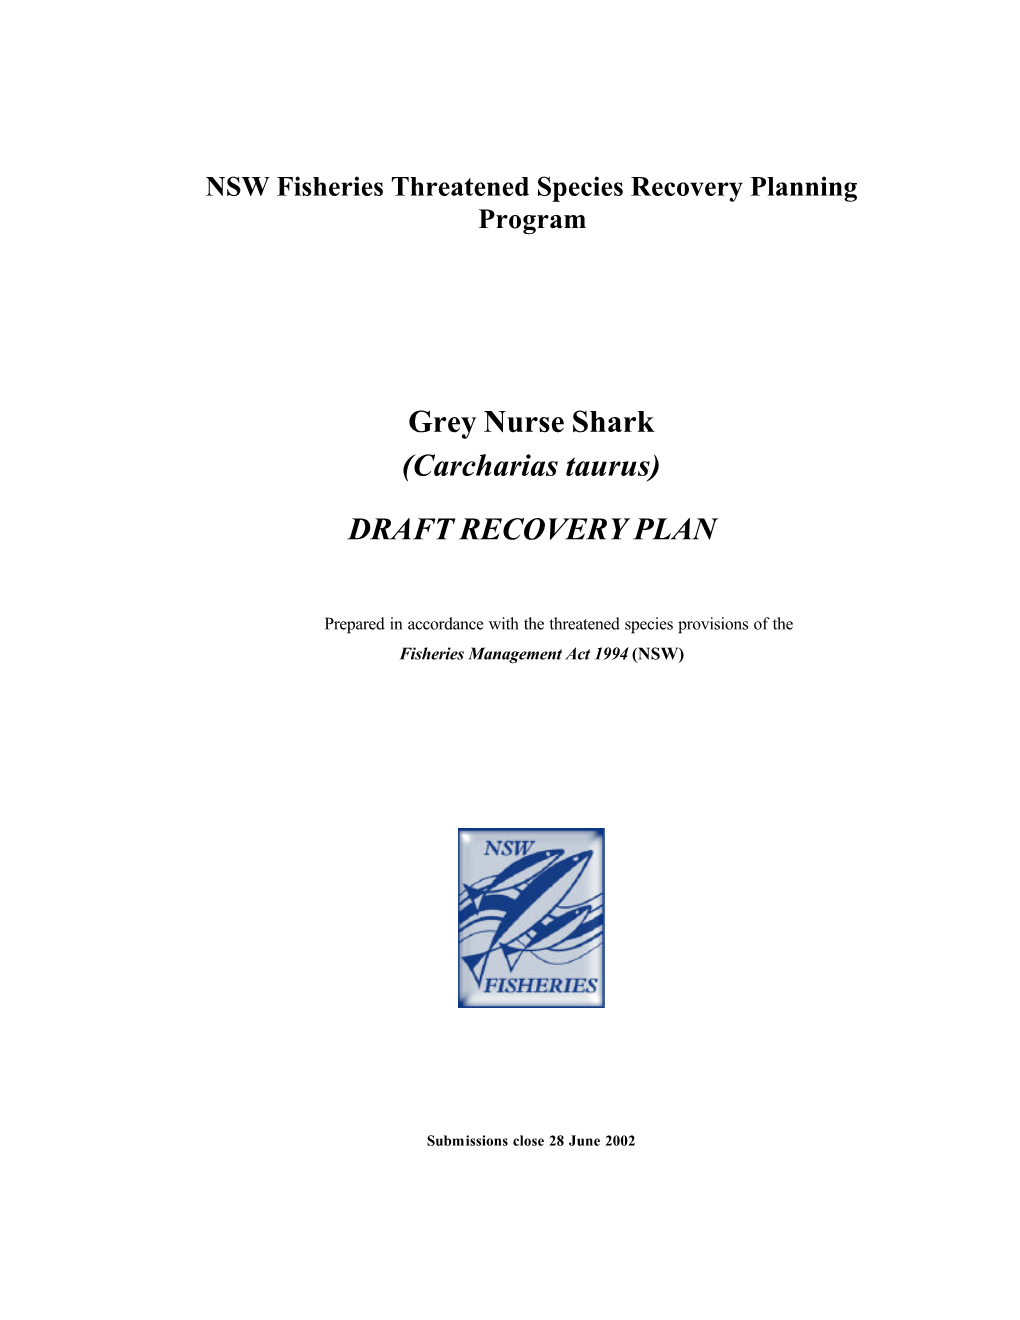 Grey Nurse Shark Draft Recovery Plan Page 3